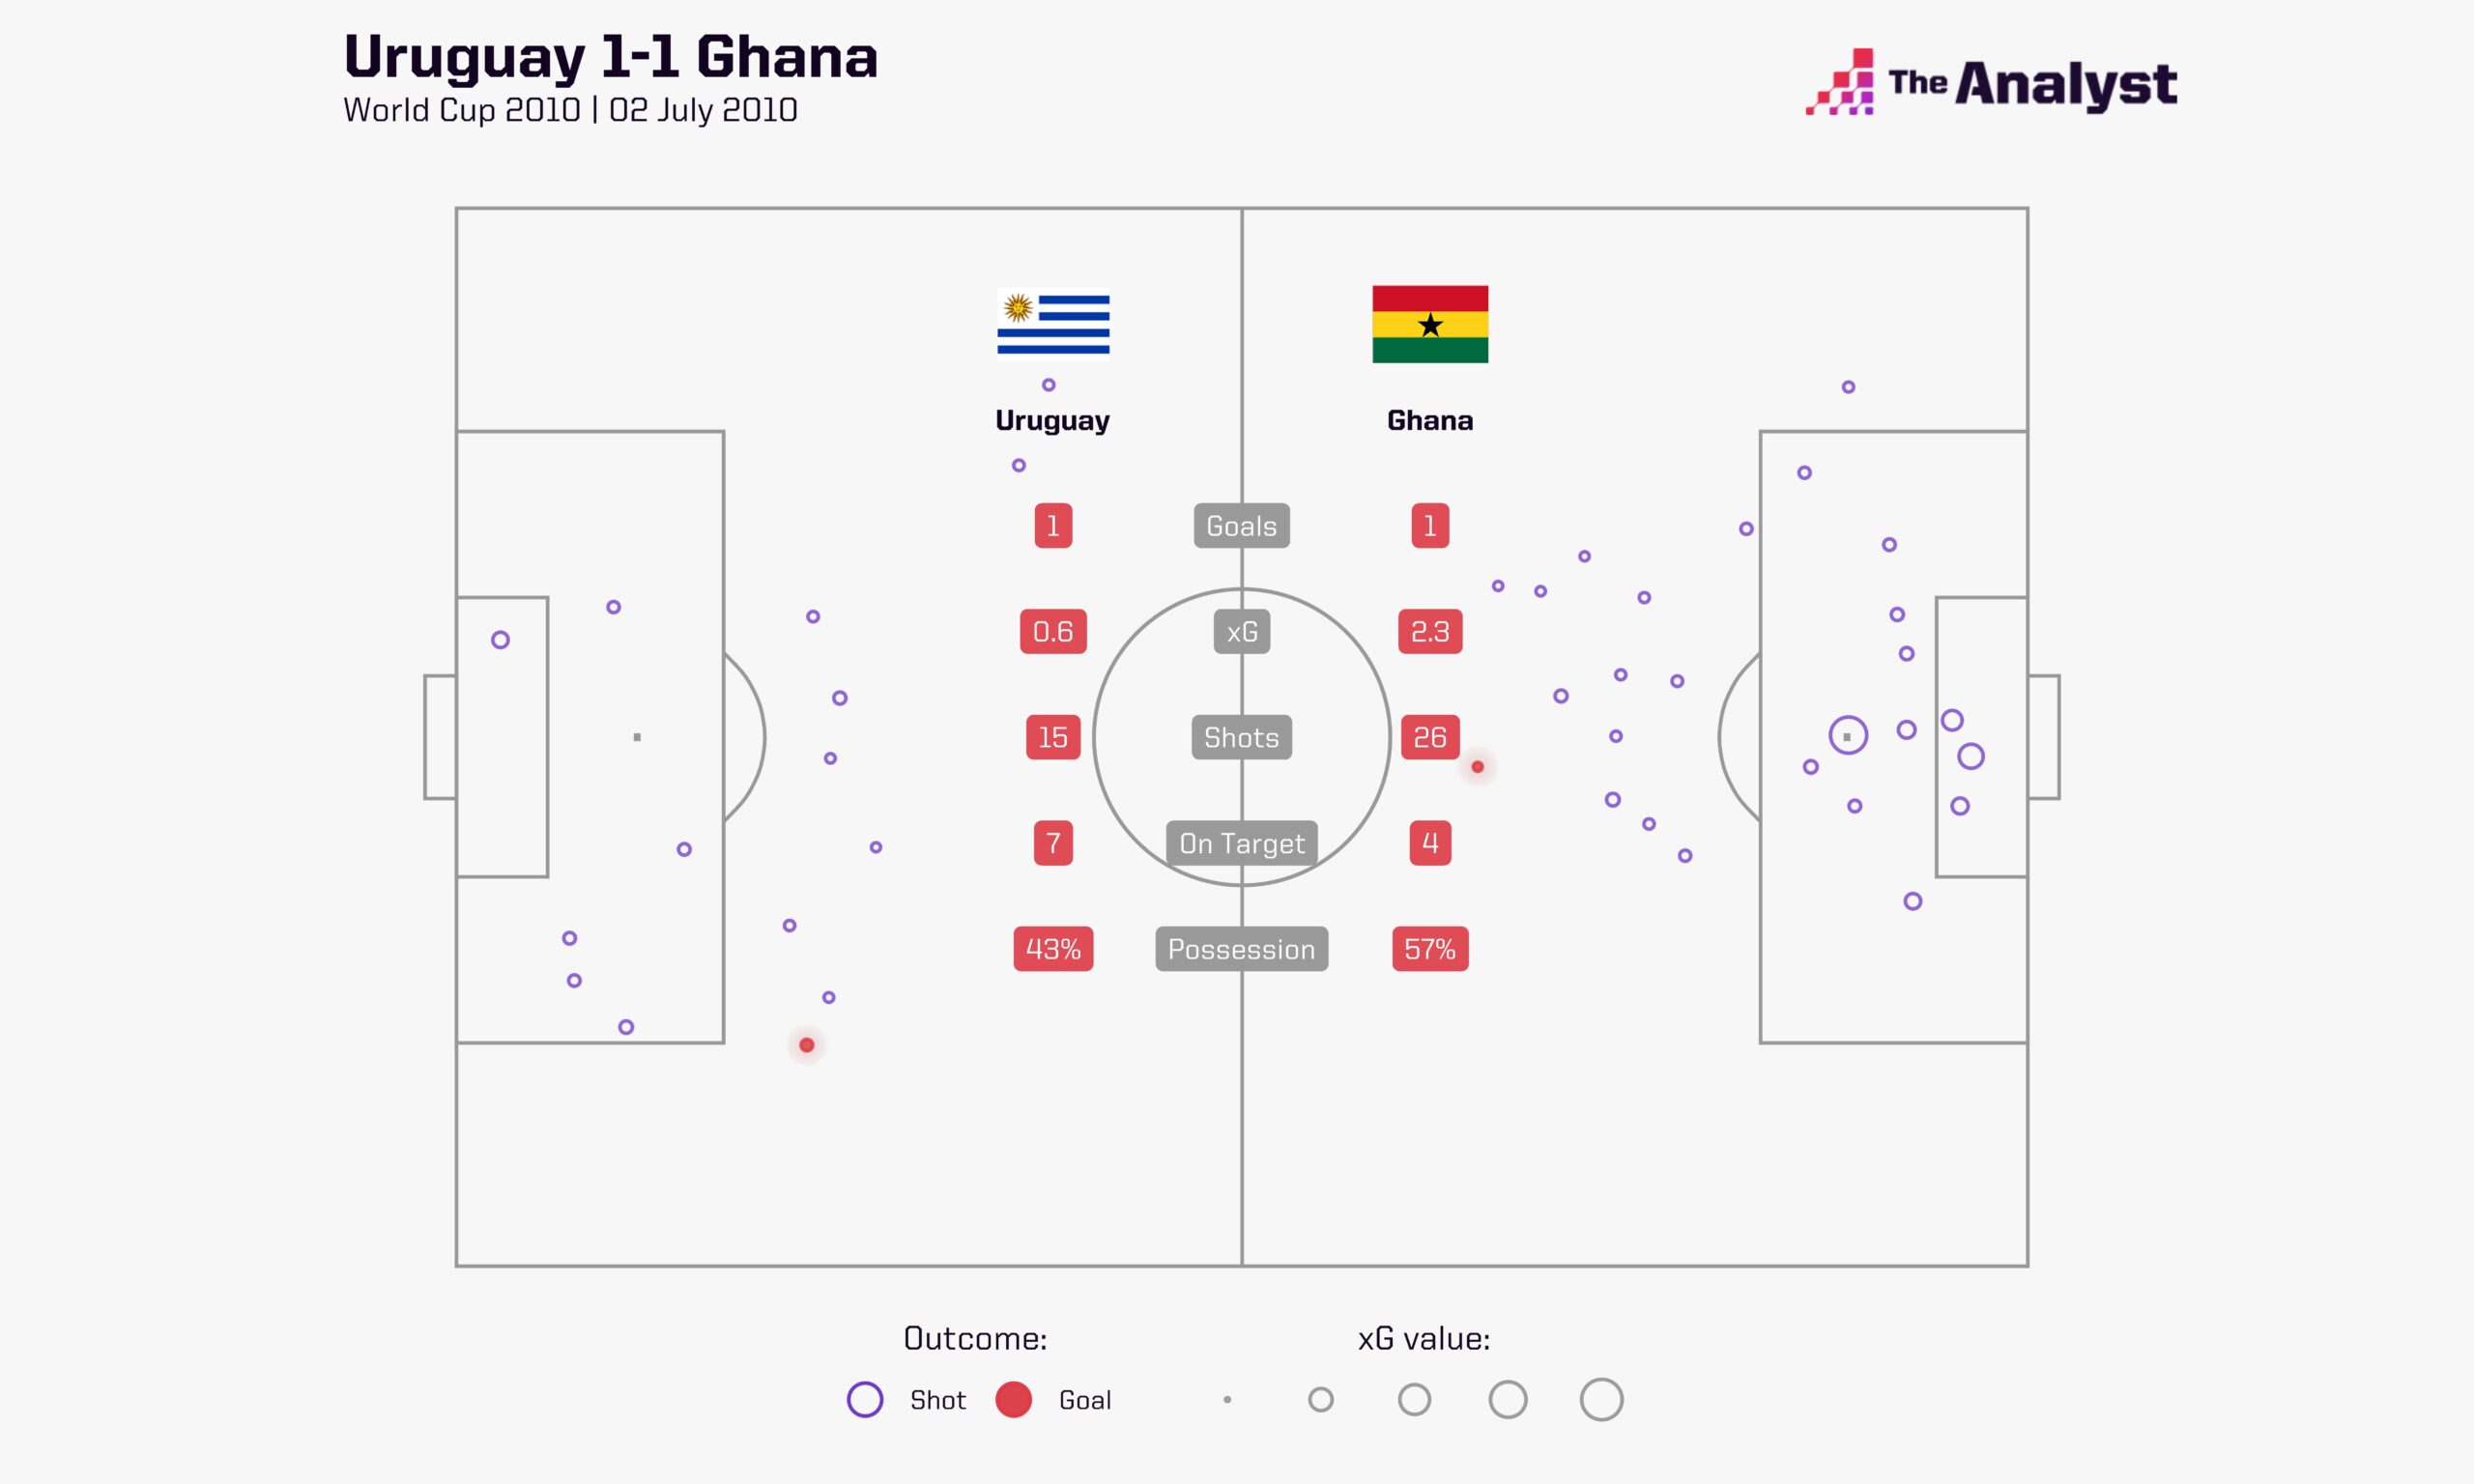 Uruguay 1-1 Ghana goals